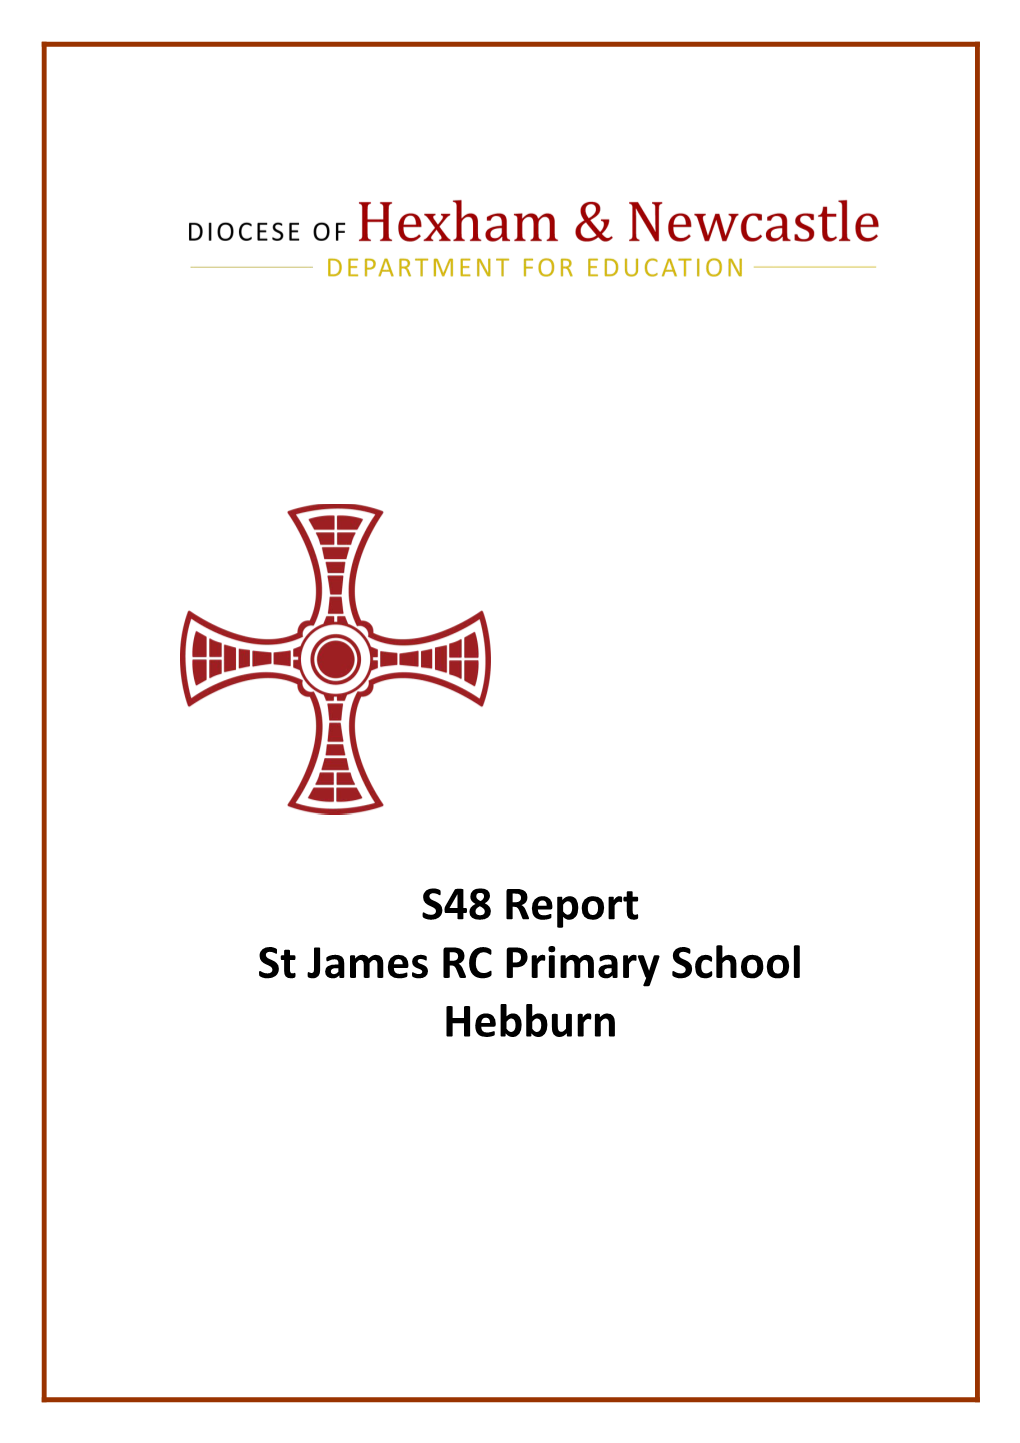 St James RC Primary School